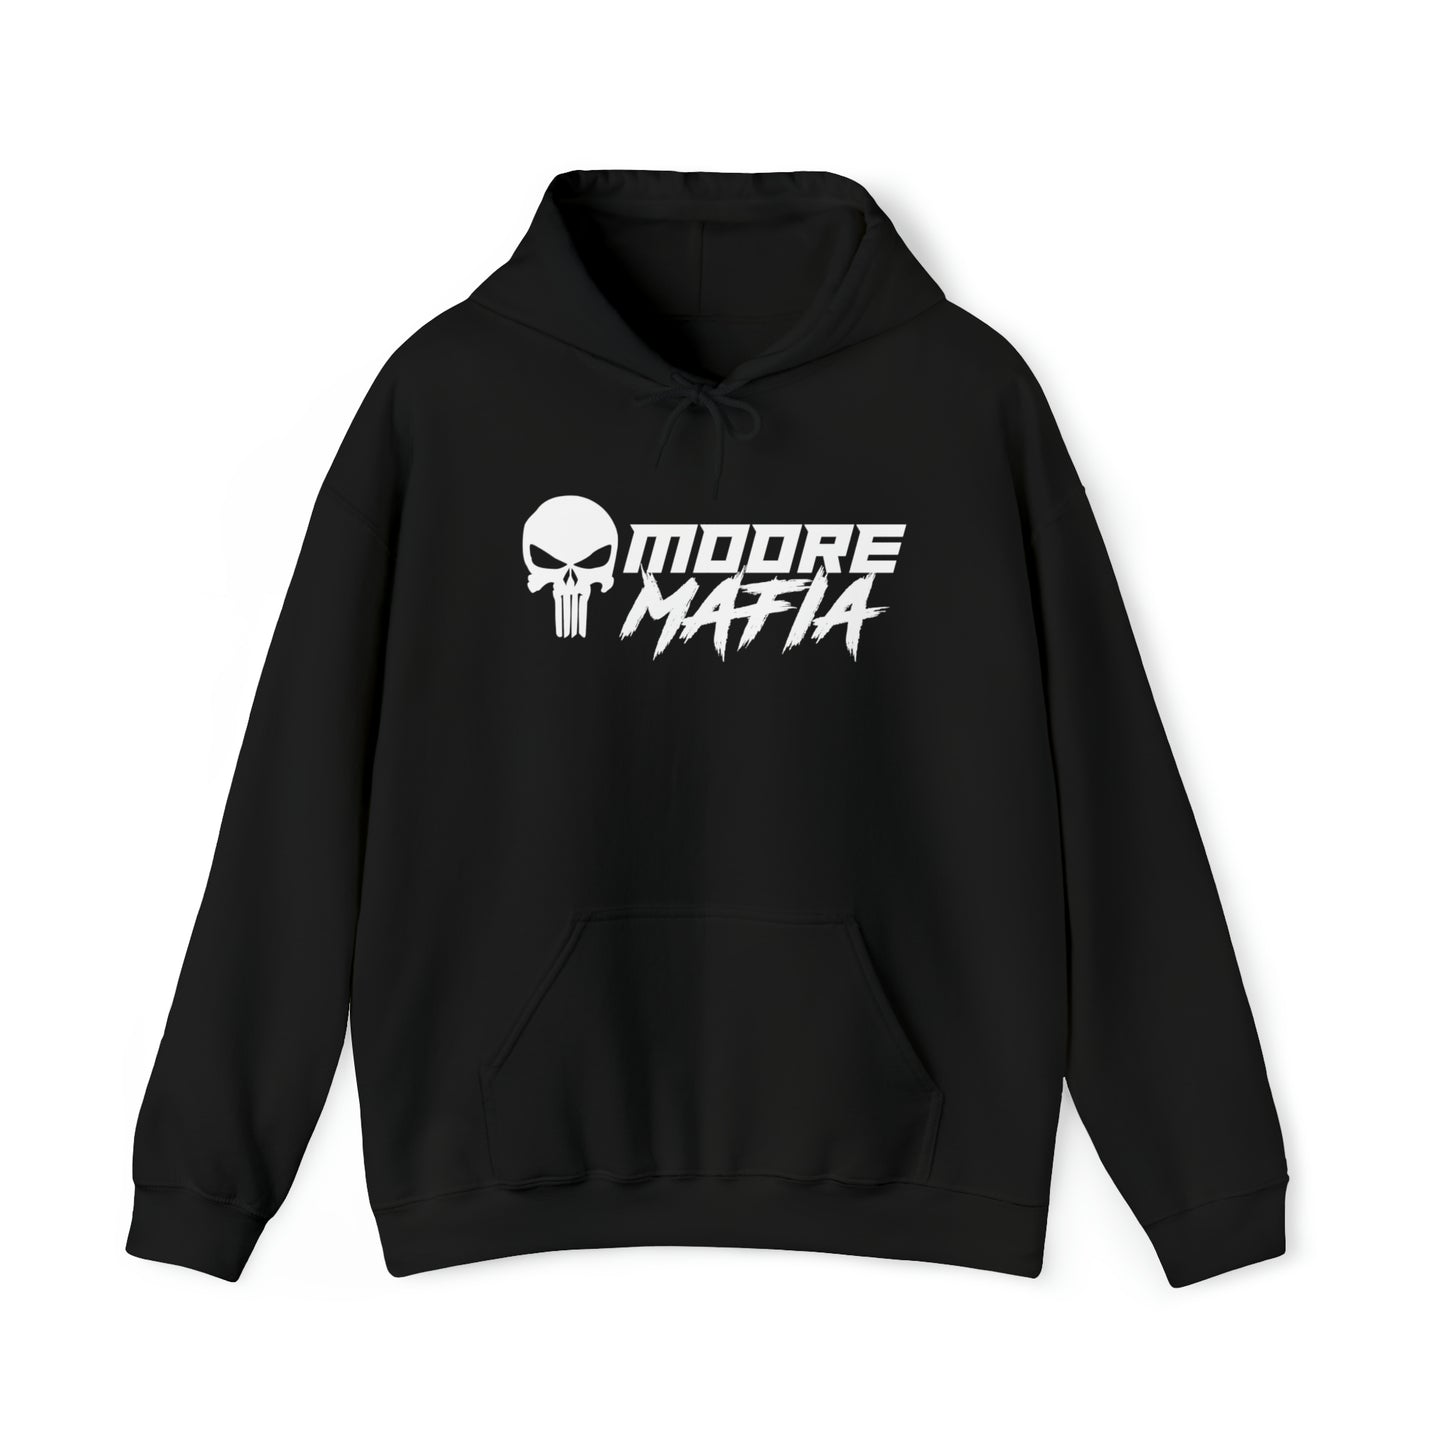 Gapplebee's Hooded Sweatshirt